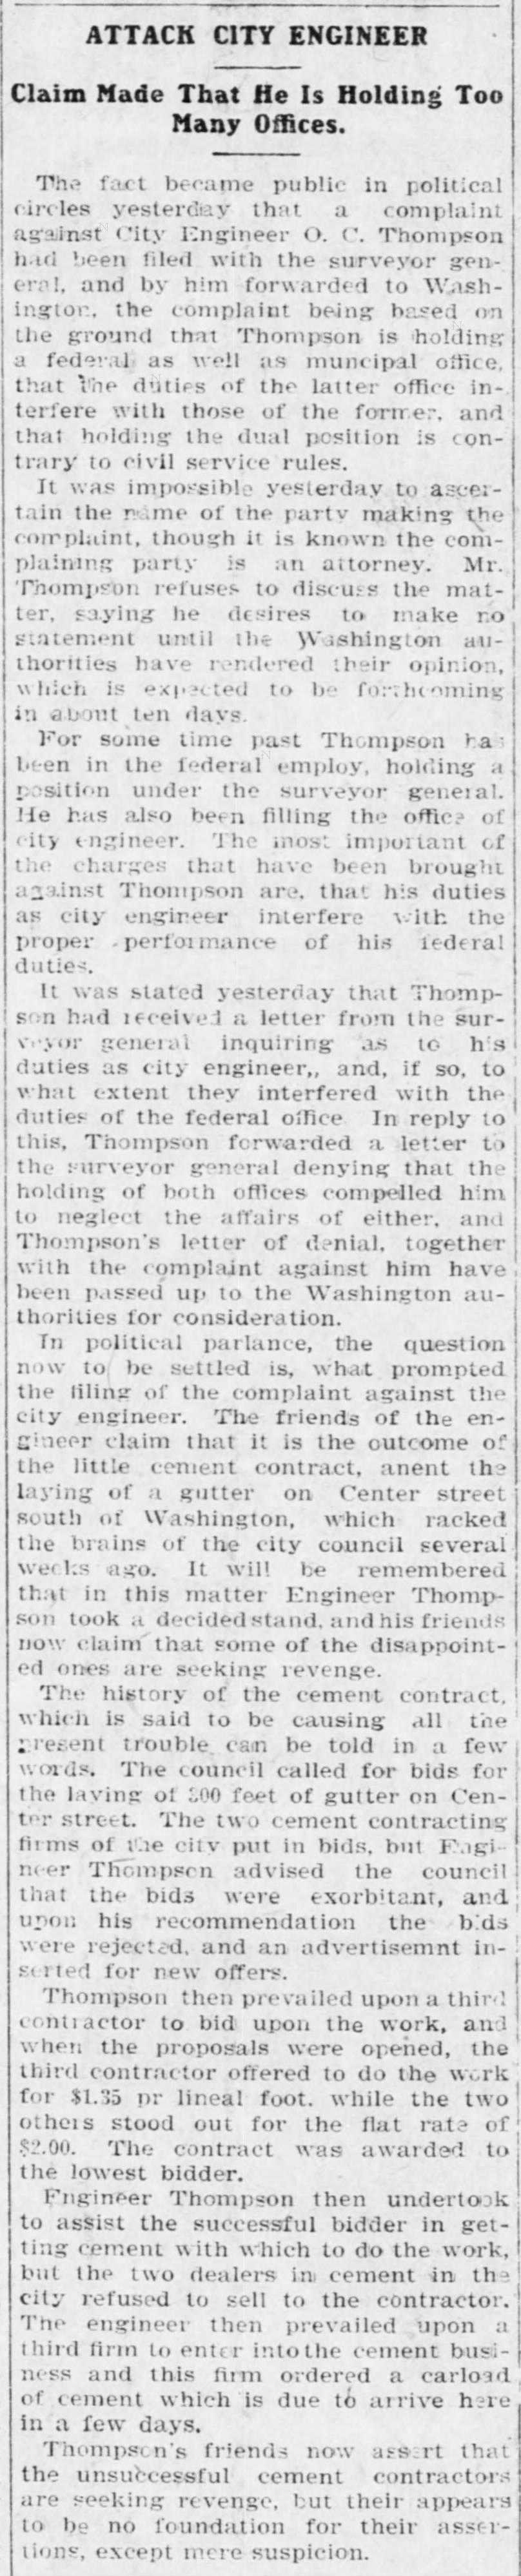 Attack City Engineer, Arizona Republican 5 (March 5, 1904).